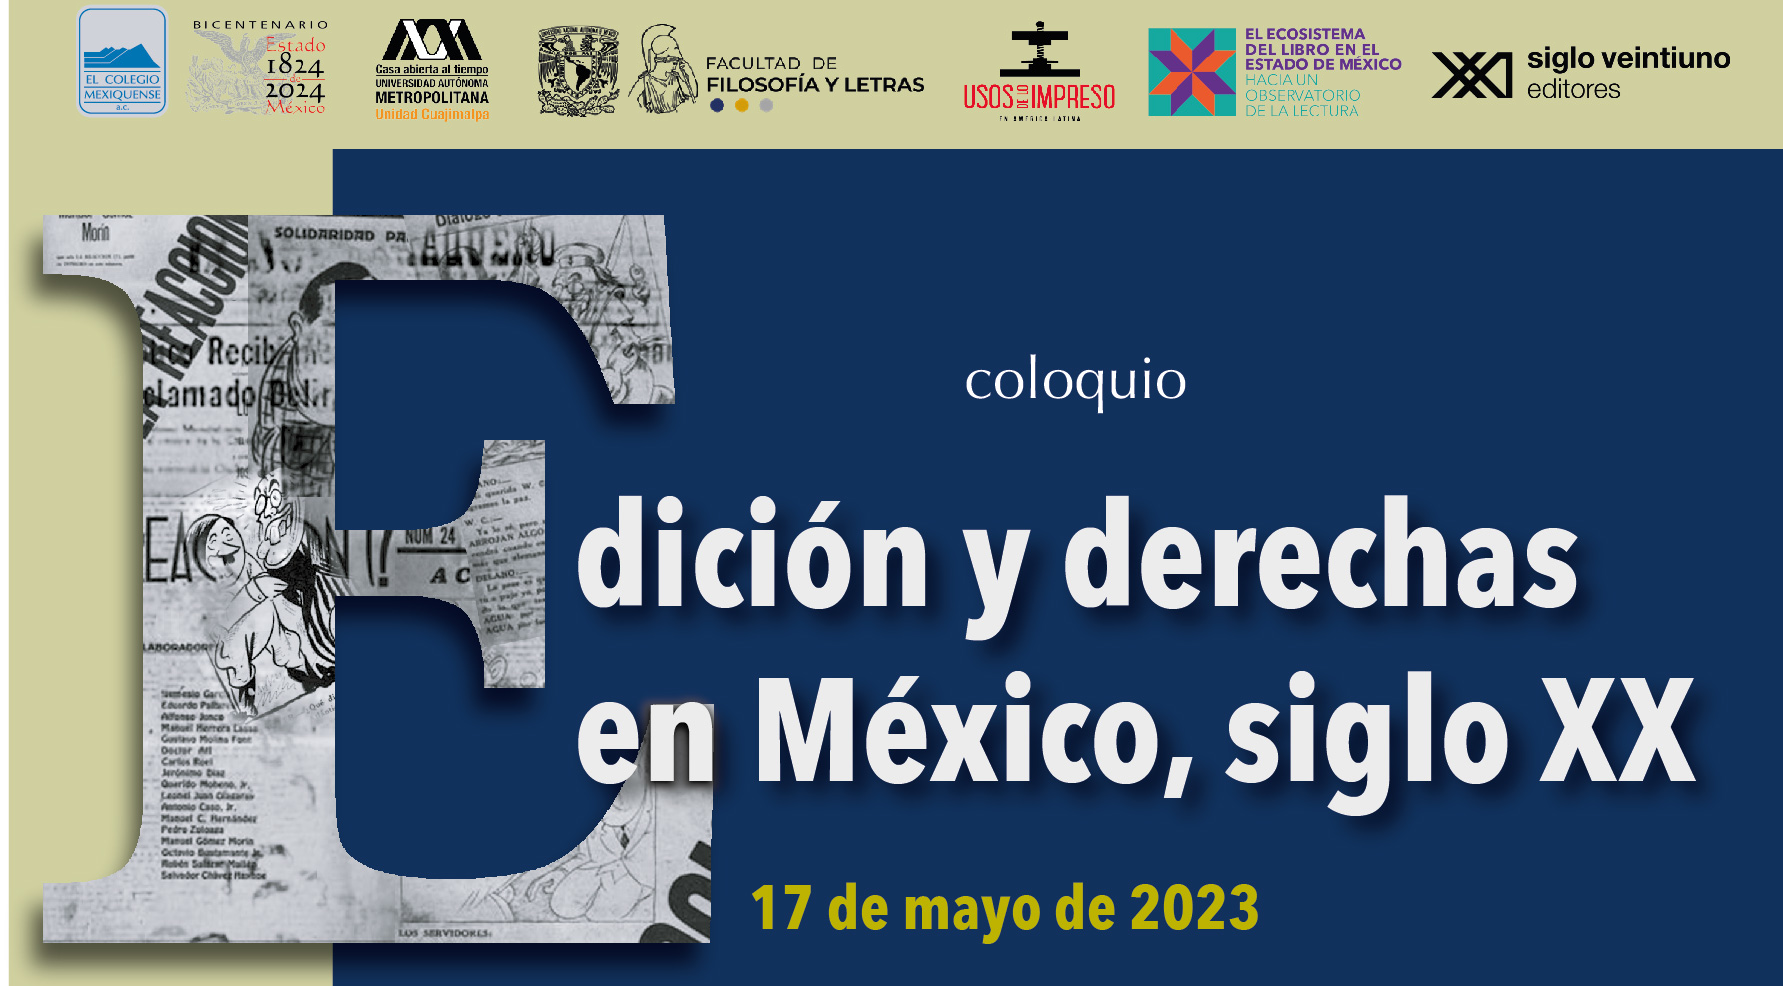 Coloquio. Edición y derechas en México, siglo XX